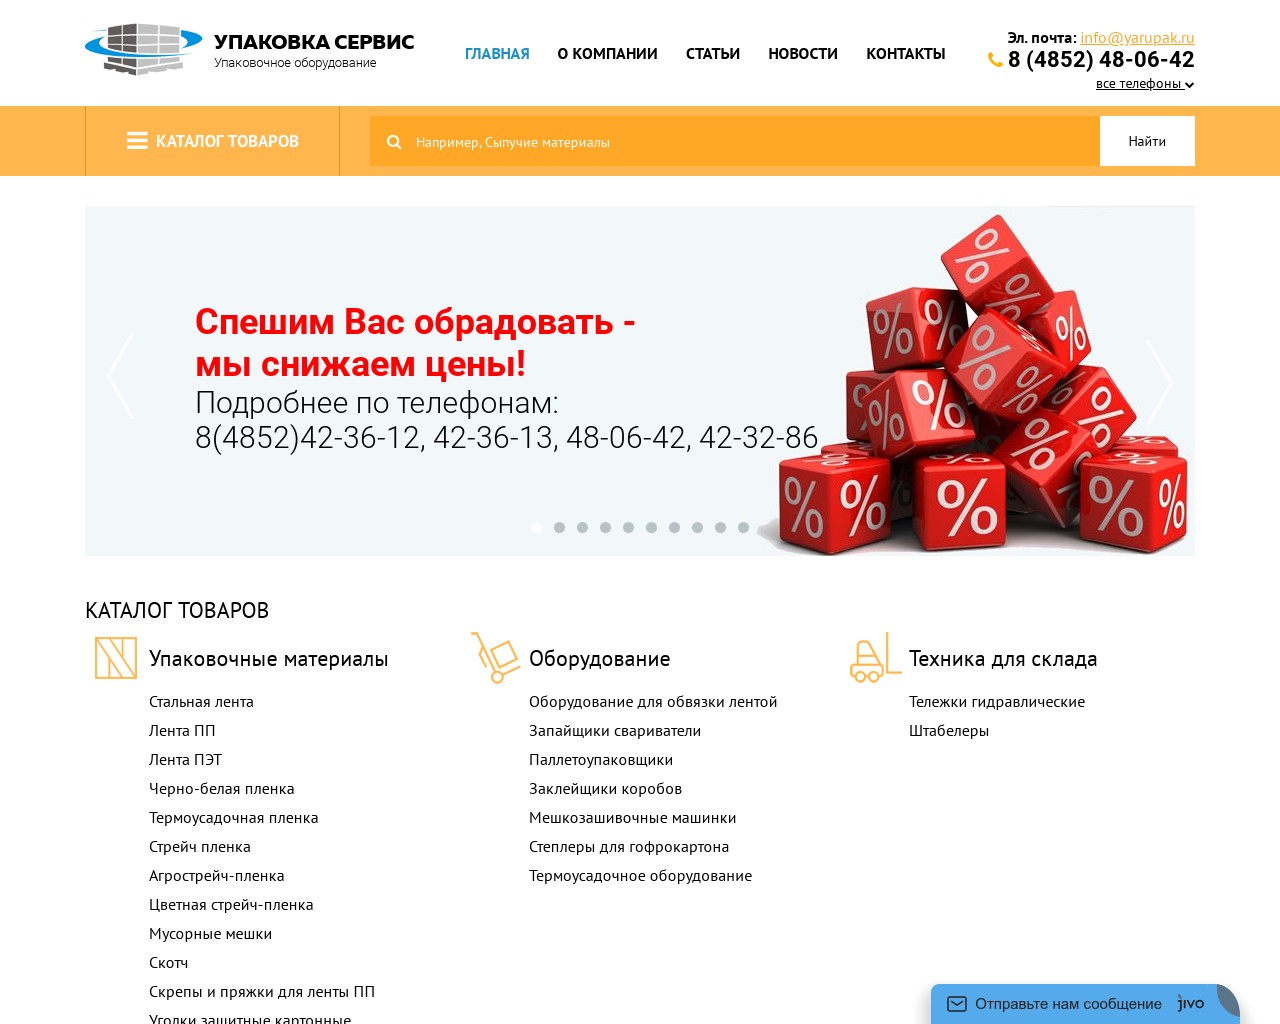 Изображение скриншота сайта - Упаковочные расходные материалы от компании Упаковка Сервис Ярославль